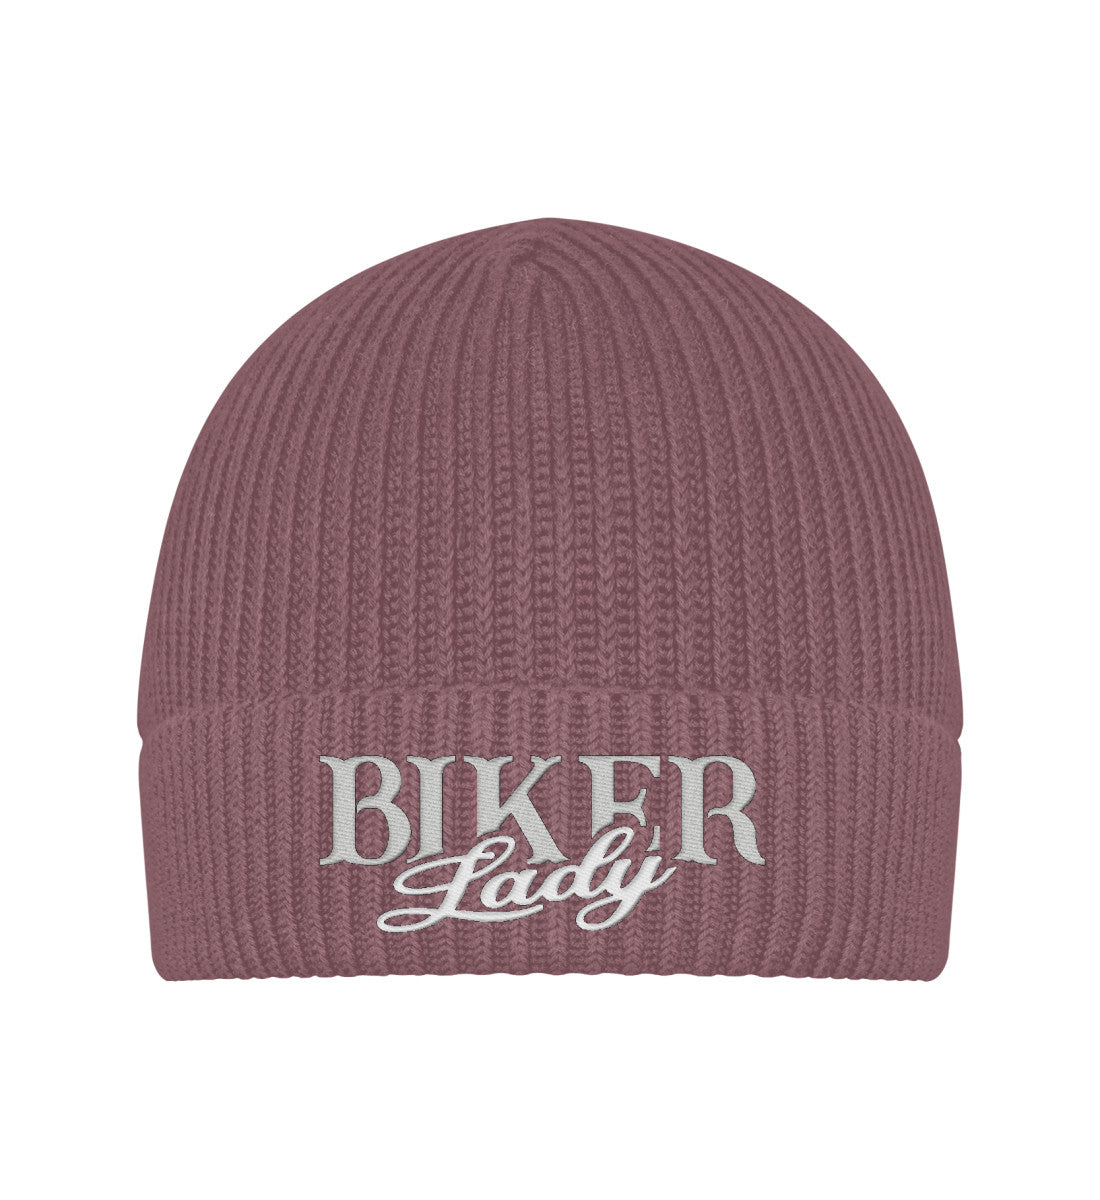 Eine Bikerin Beanie Mütze für Motorradfahrerinnen von Wingbikers mit dem Stick, Biker Lady, in alt rosa.